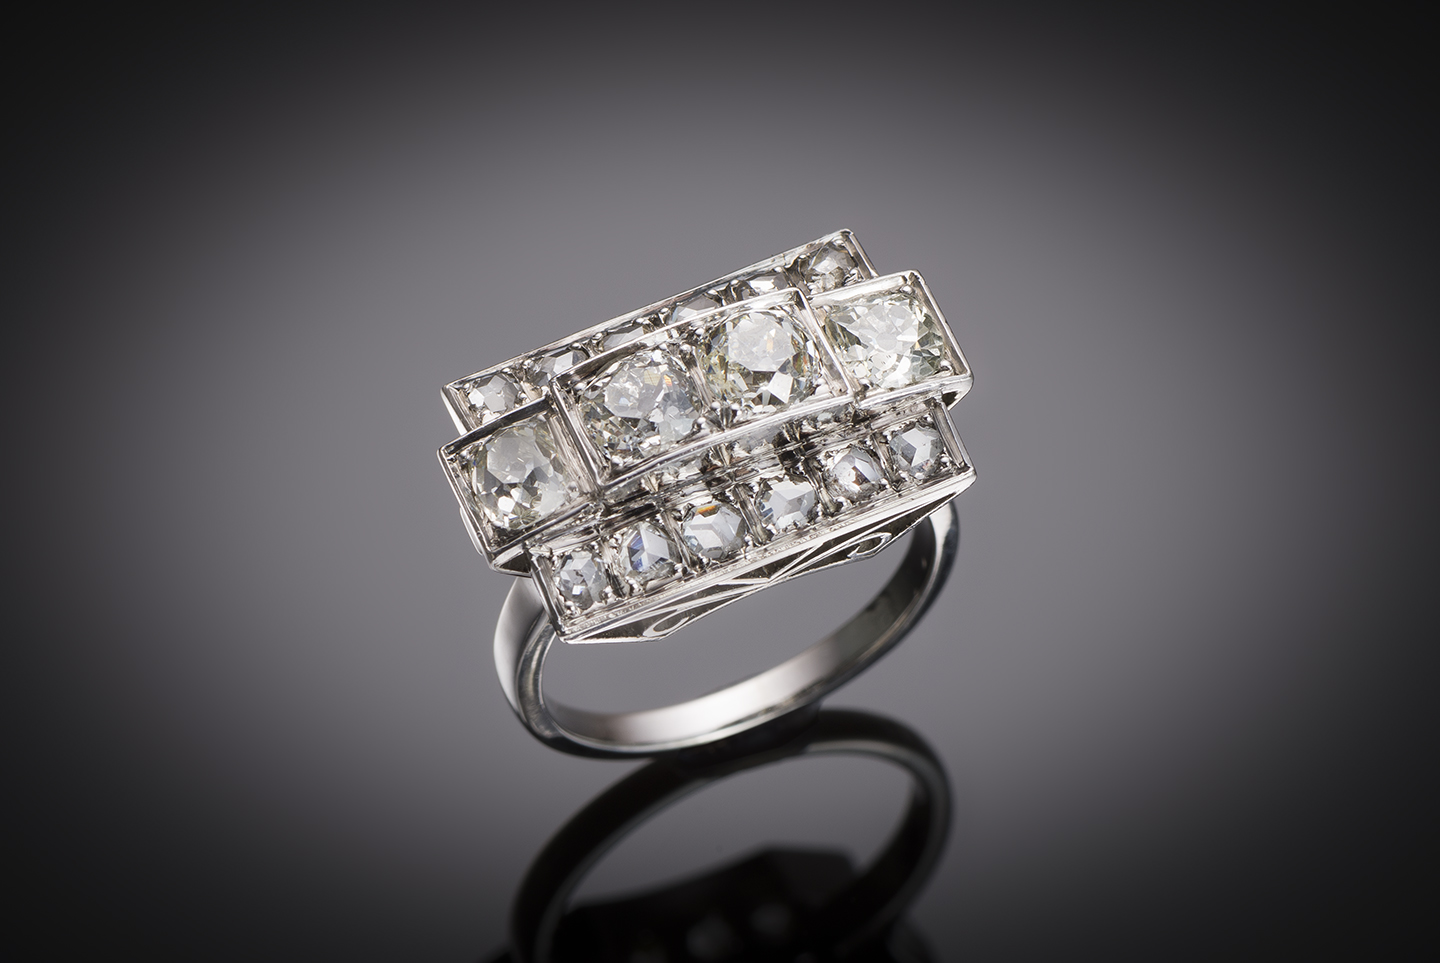 Bague Art déco diamants (2 carats) en platine. Travail français vers 1930.-1